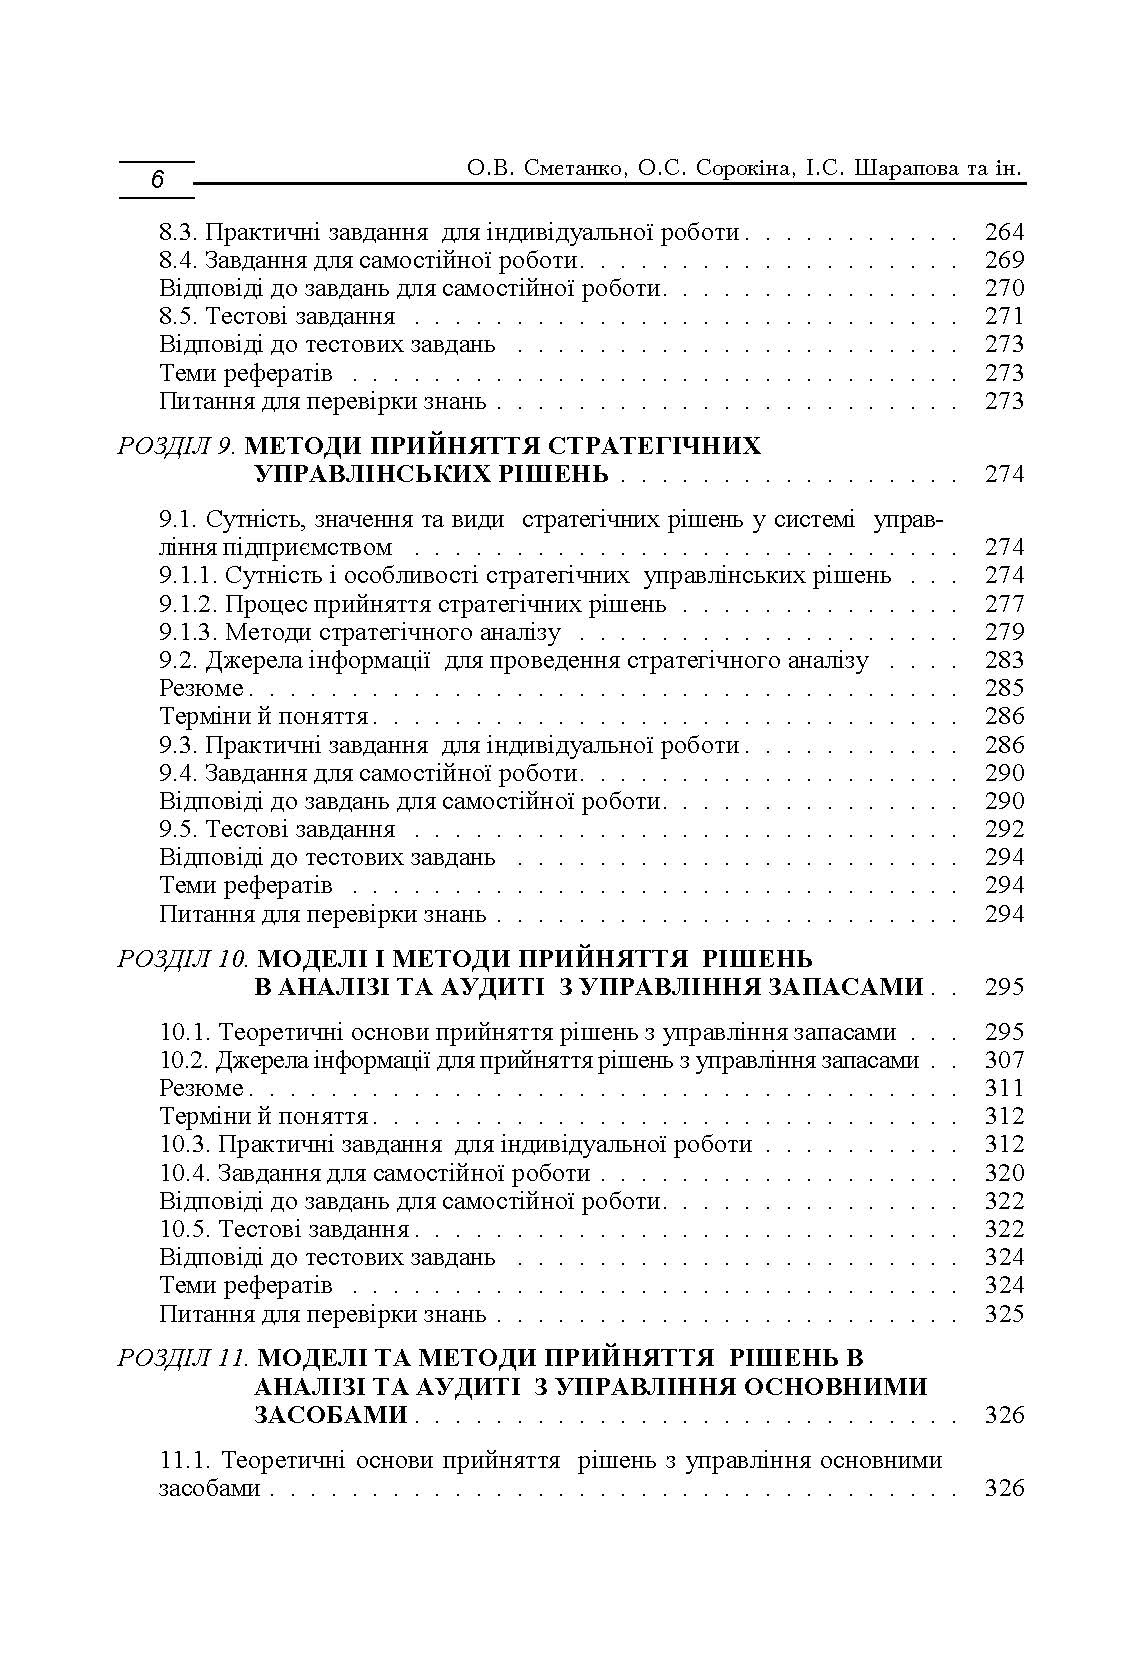 Моделі і методи прийняття рішень в аналізі та аудиті (2019 год)). Автор — Сметанко О.В.. 